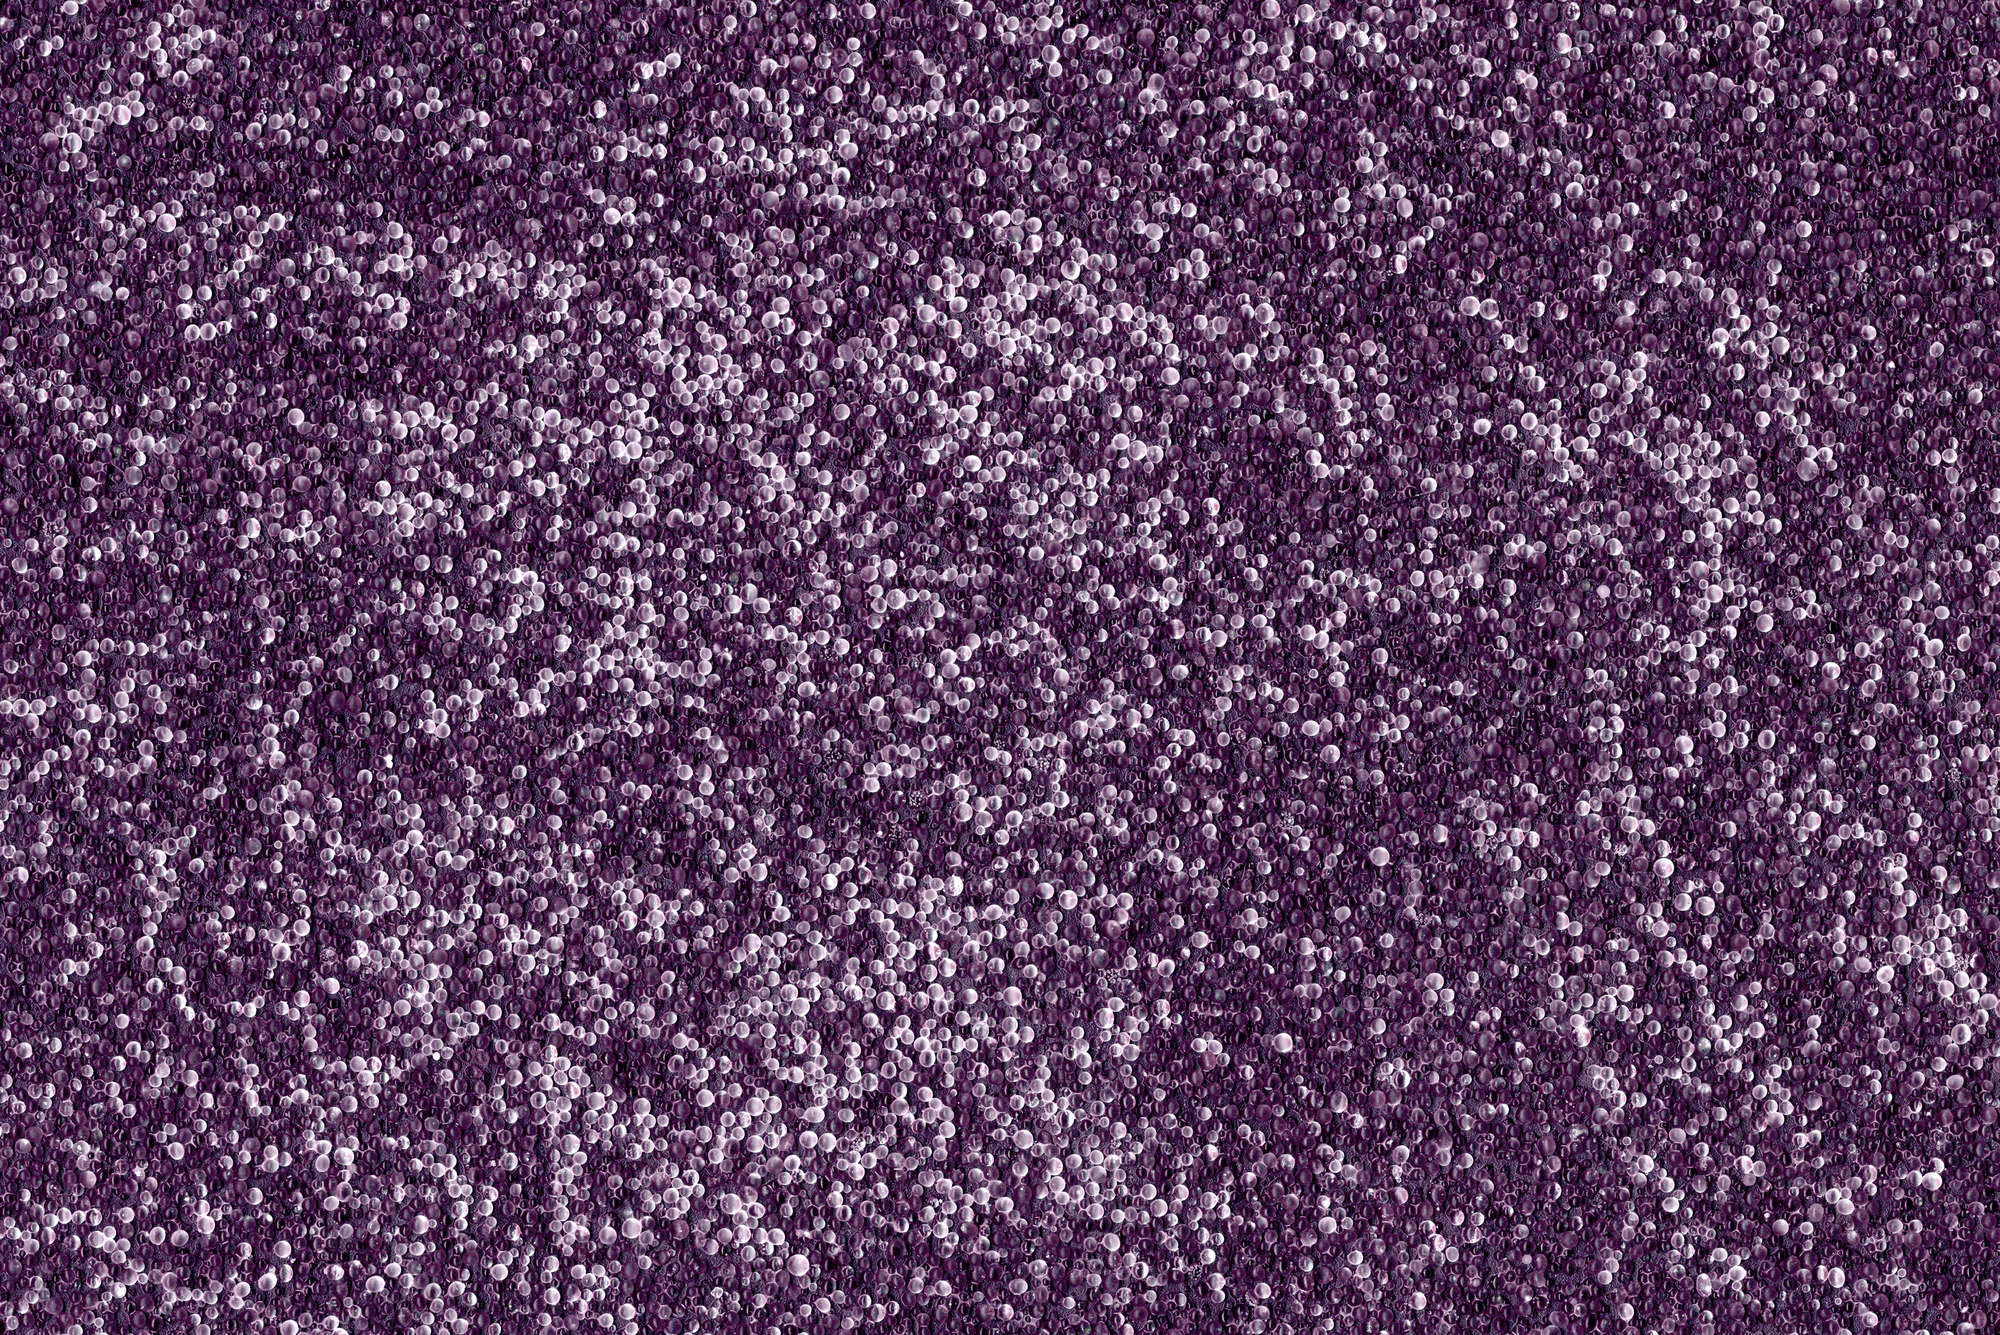             Digital behang veel kleine knikkers in paars - Premium glad vlies
        